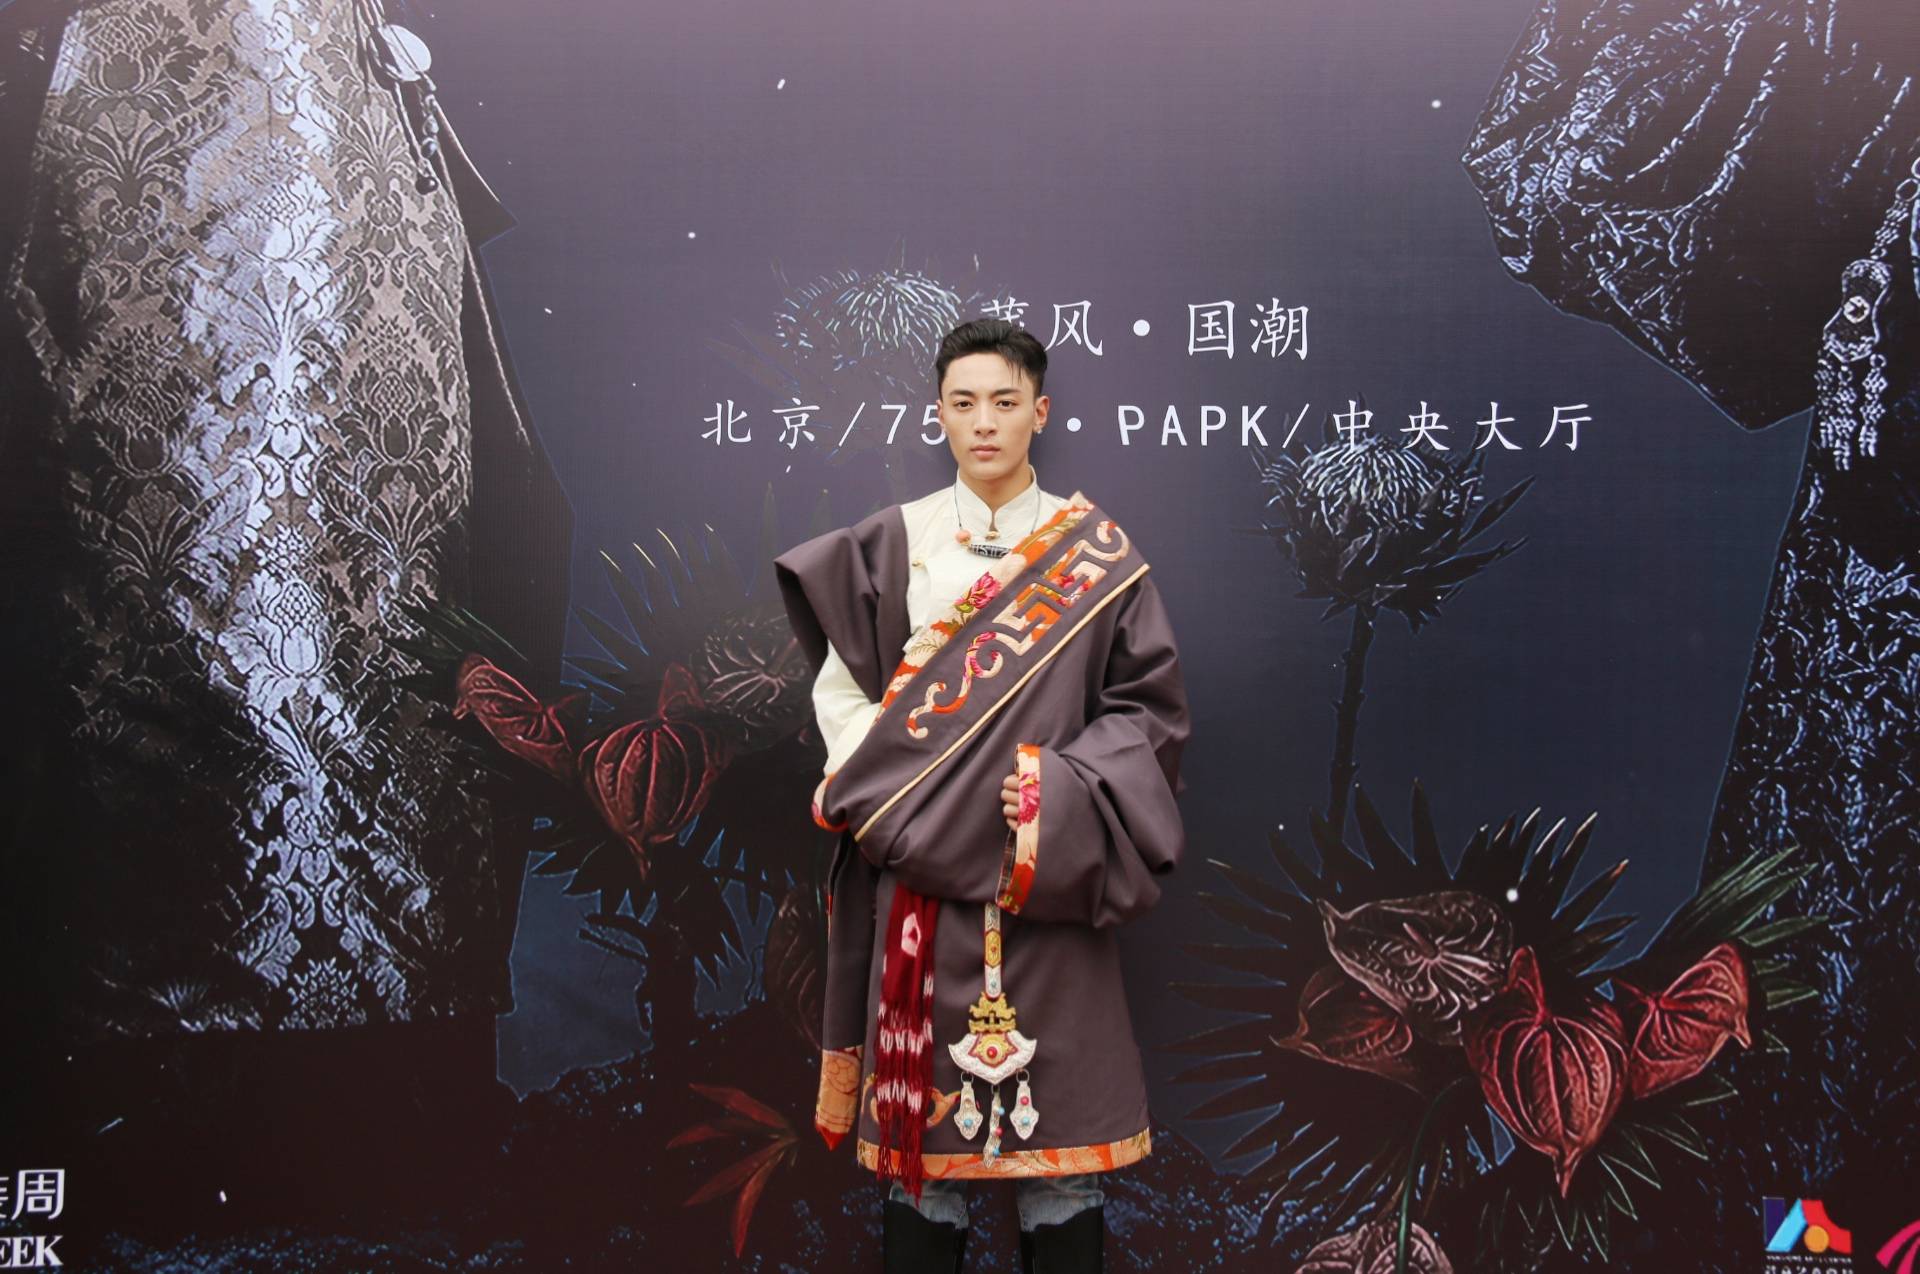 来自四川卫视《藏风美少年》的两位少年布瓦和花丹身着藏族传统服饰